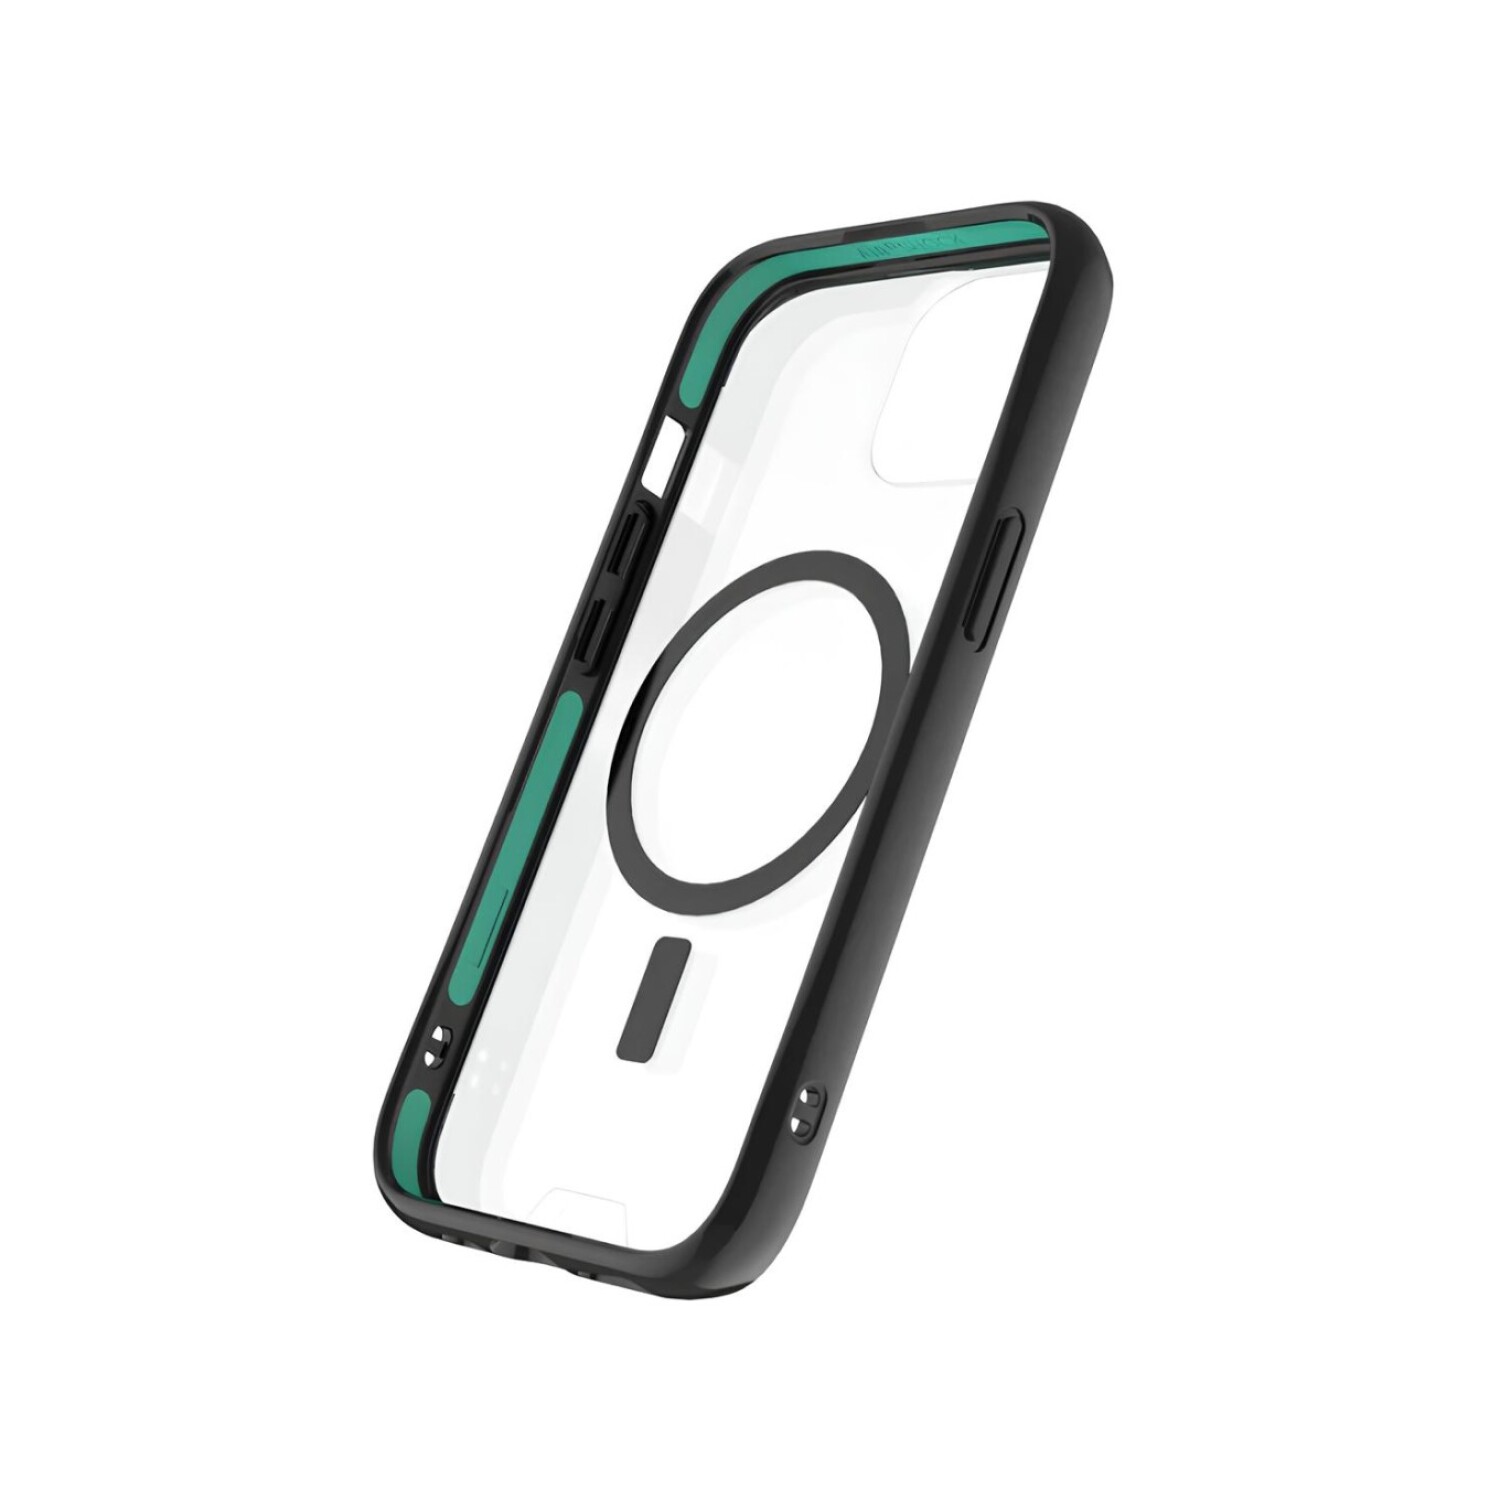 Protector Case Transparente MOUS Case Clarity 2.0 con MagSafe para